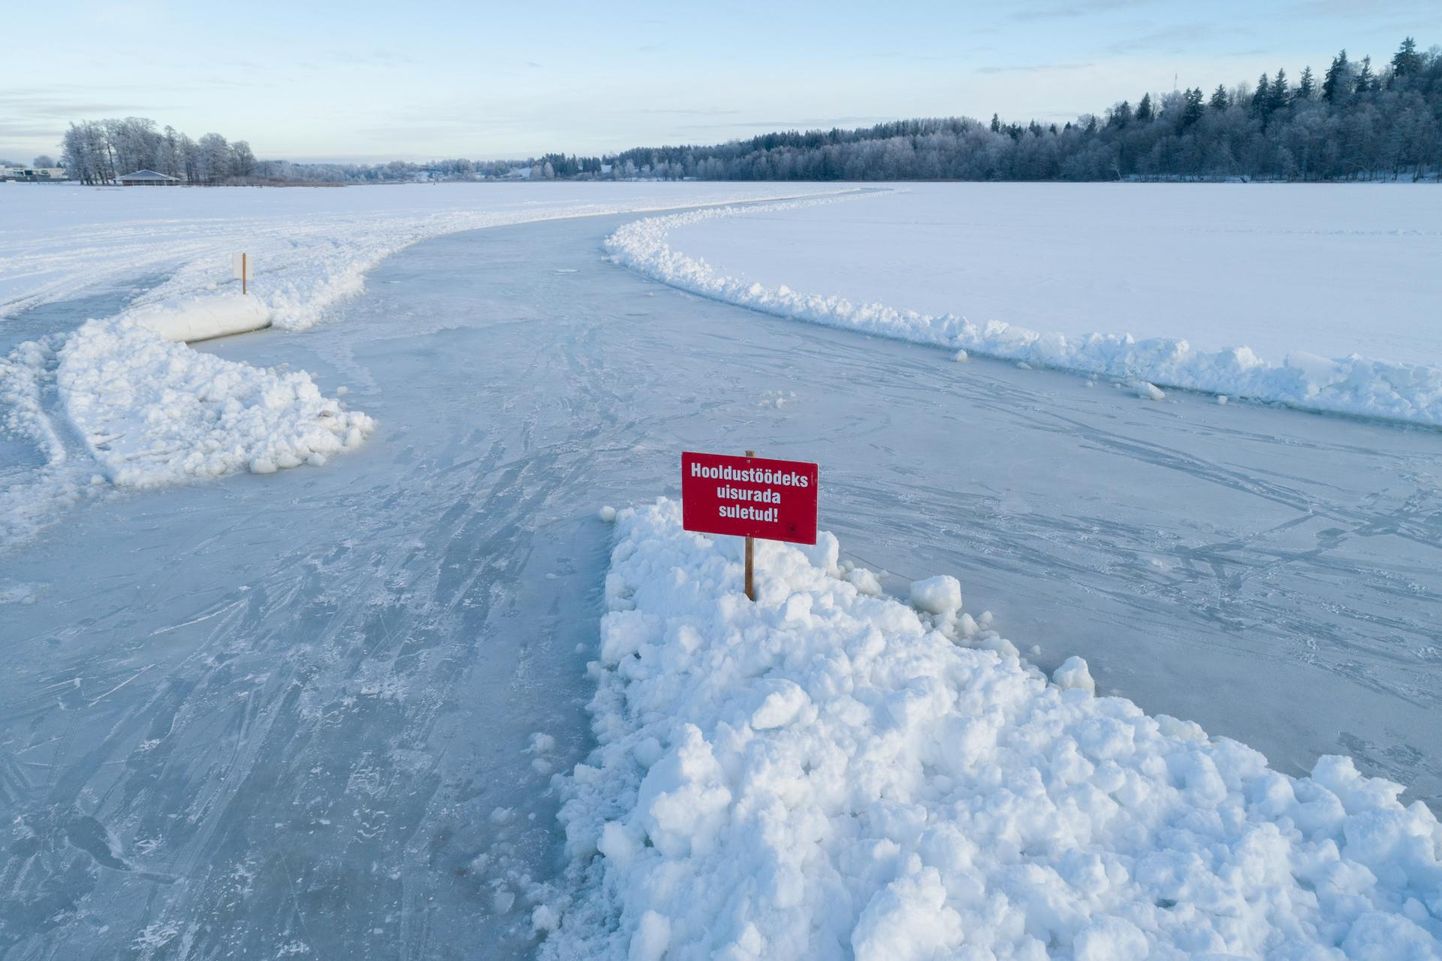 Eile olid Viljandi järvel sildid, mis andsid teada, et uisurada on suletud. Keelu eiramine võib korraldajate selgitusel jää pealiskihi rikkuda.